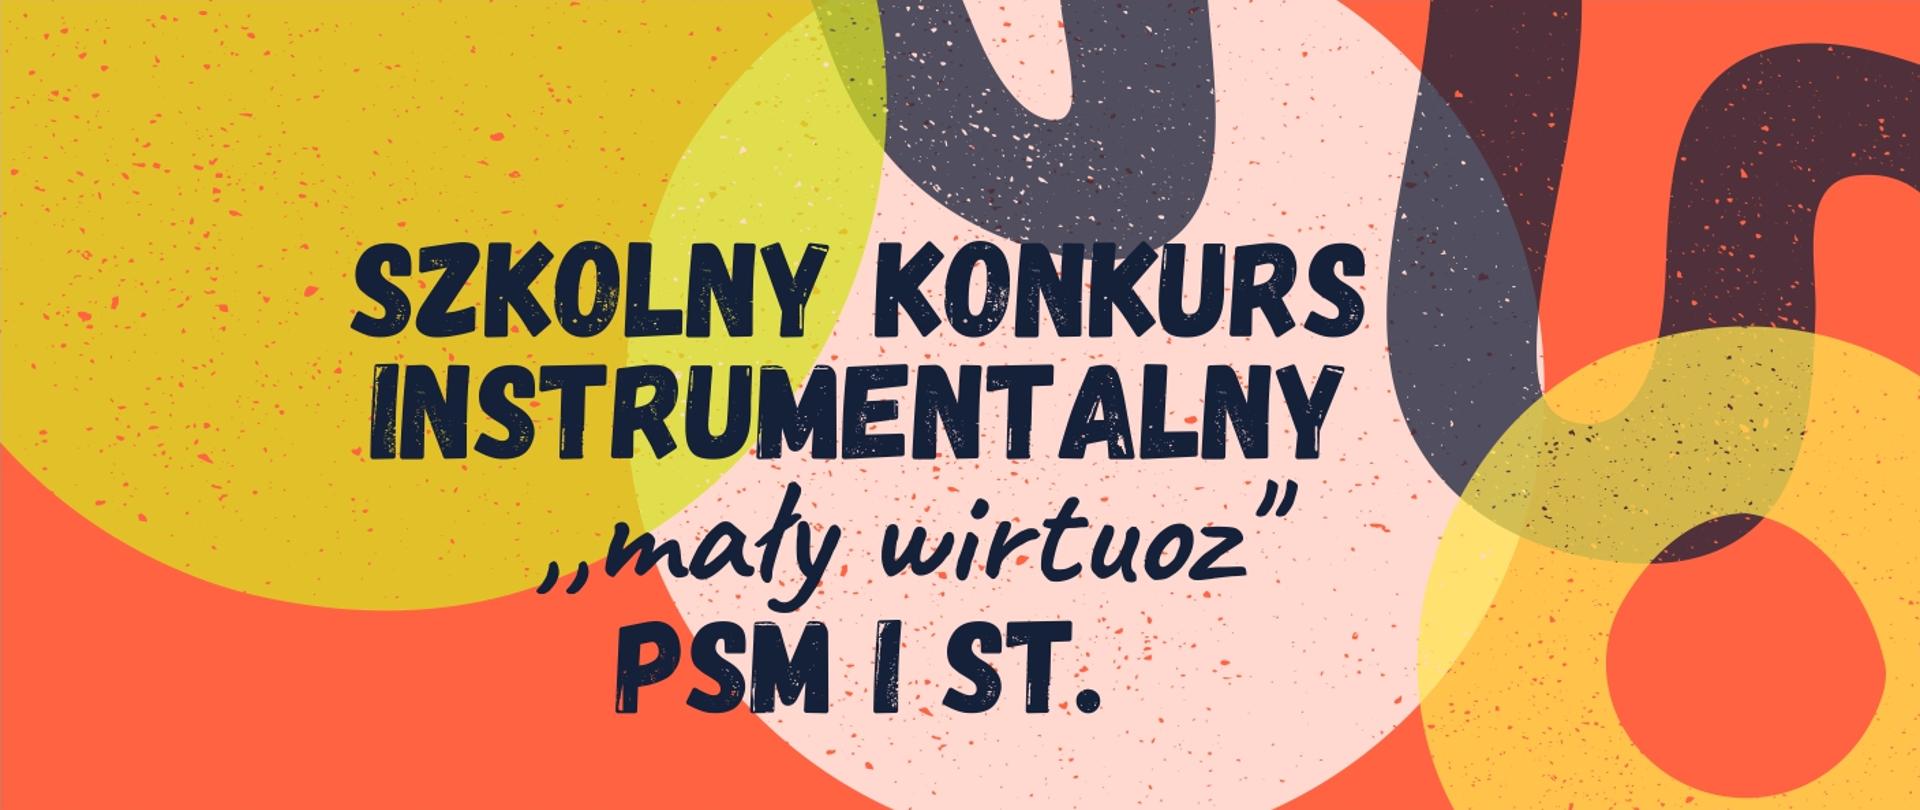 Grafika na kolorowym tle prezentuje napis: szkolny konkurs instrumentalnu "mały wirtuoz" PSM I s.